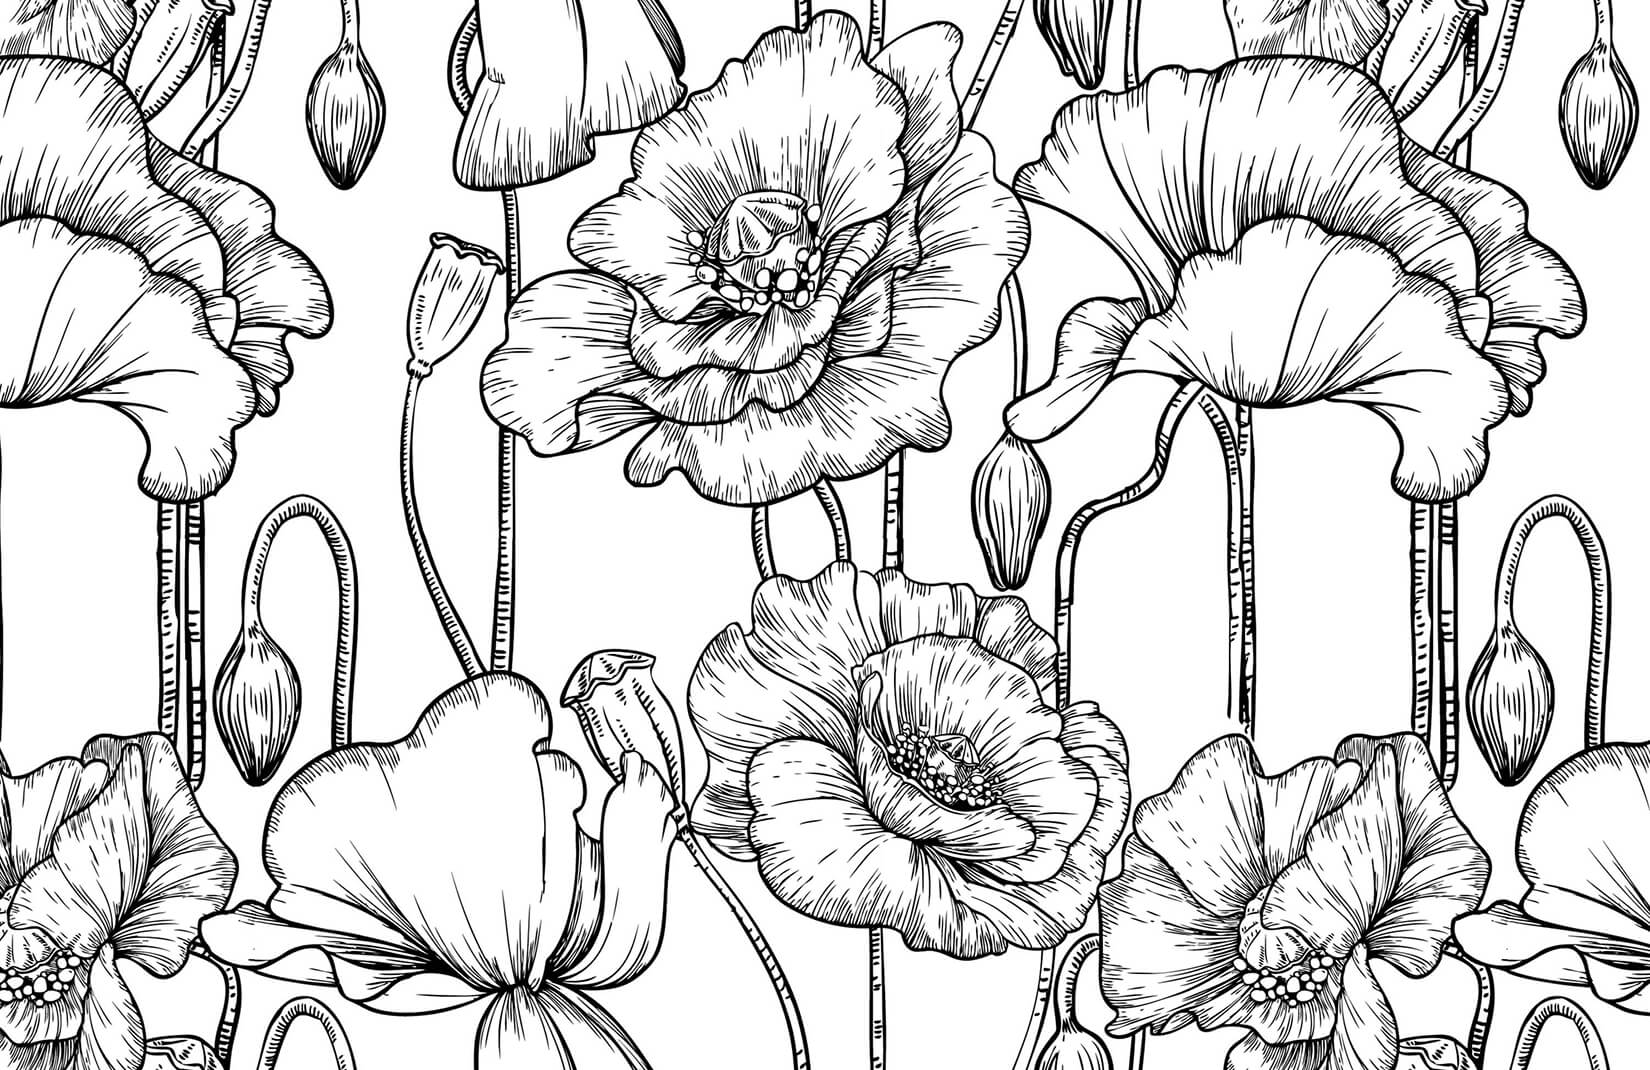 Flowers Black and White Logo - Black and White Illustrated Flowers Mural | MuralsWallpaper.co.uk